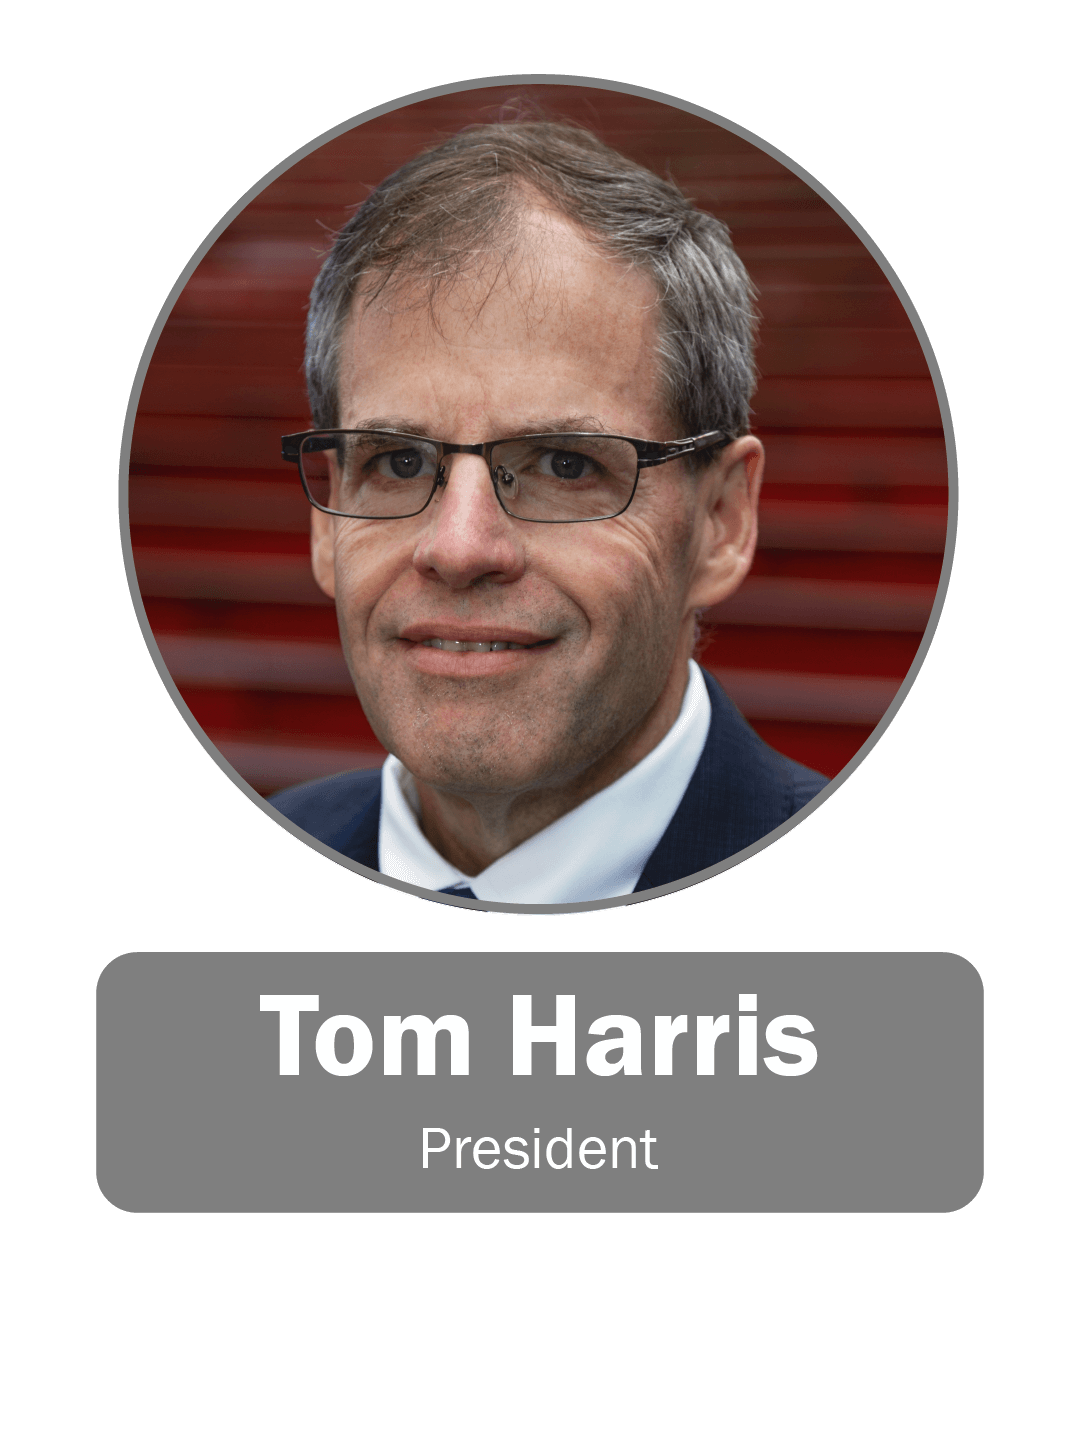 Tom Harris, President